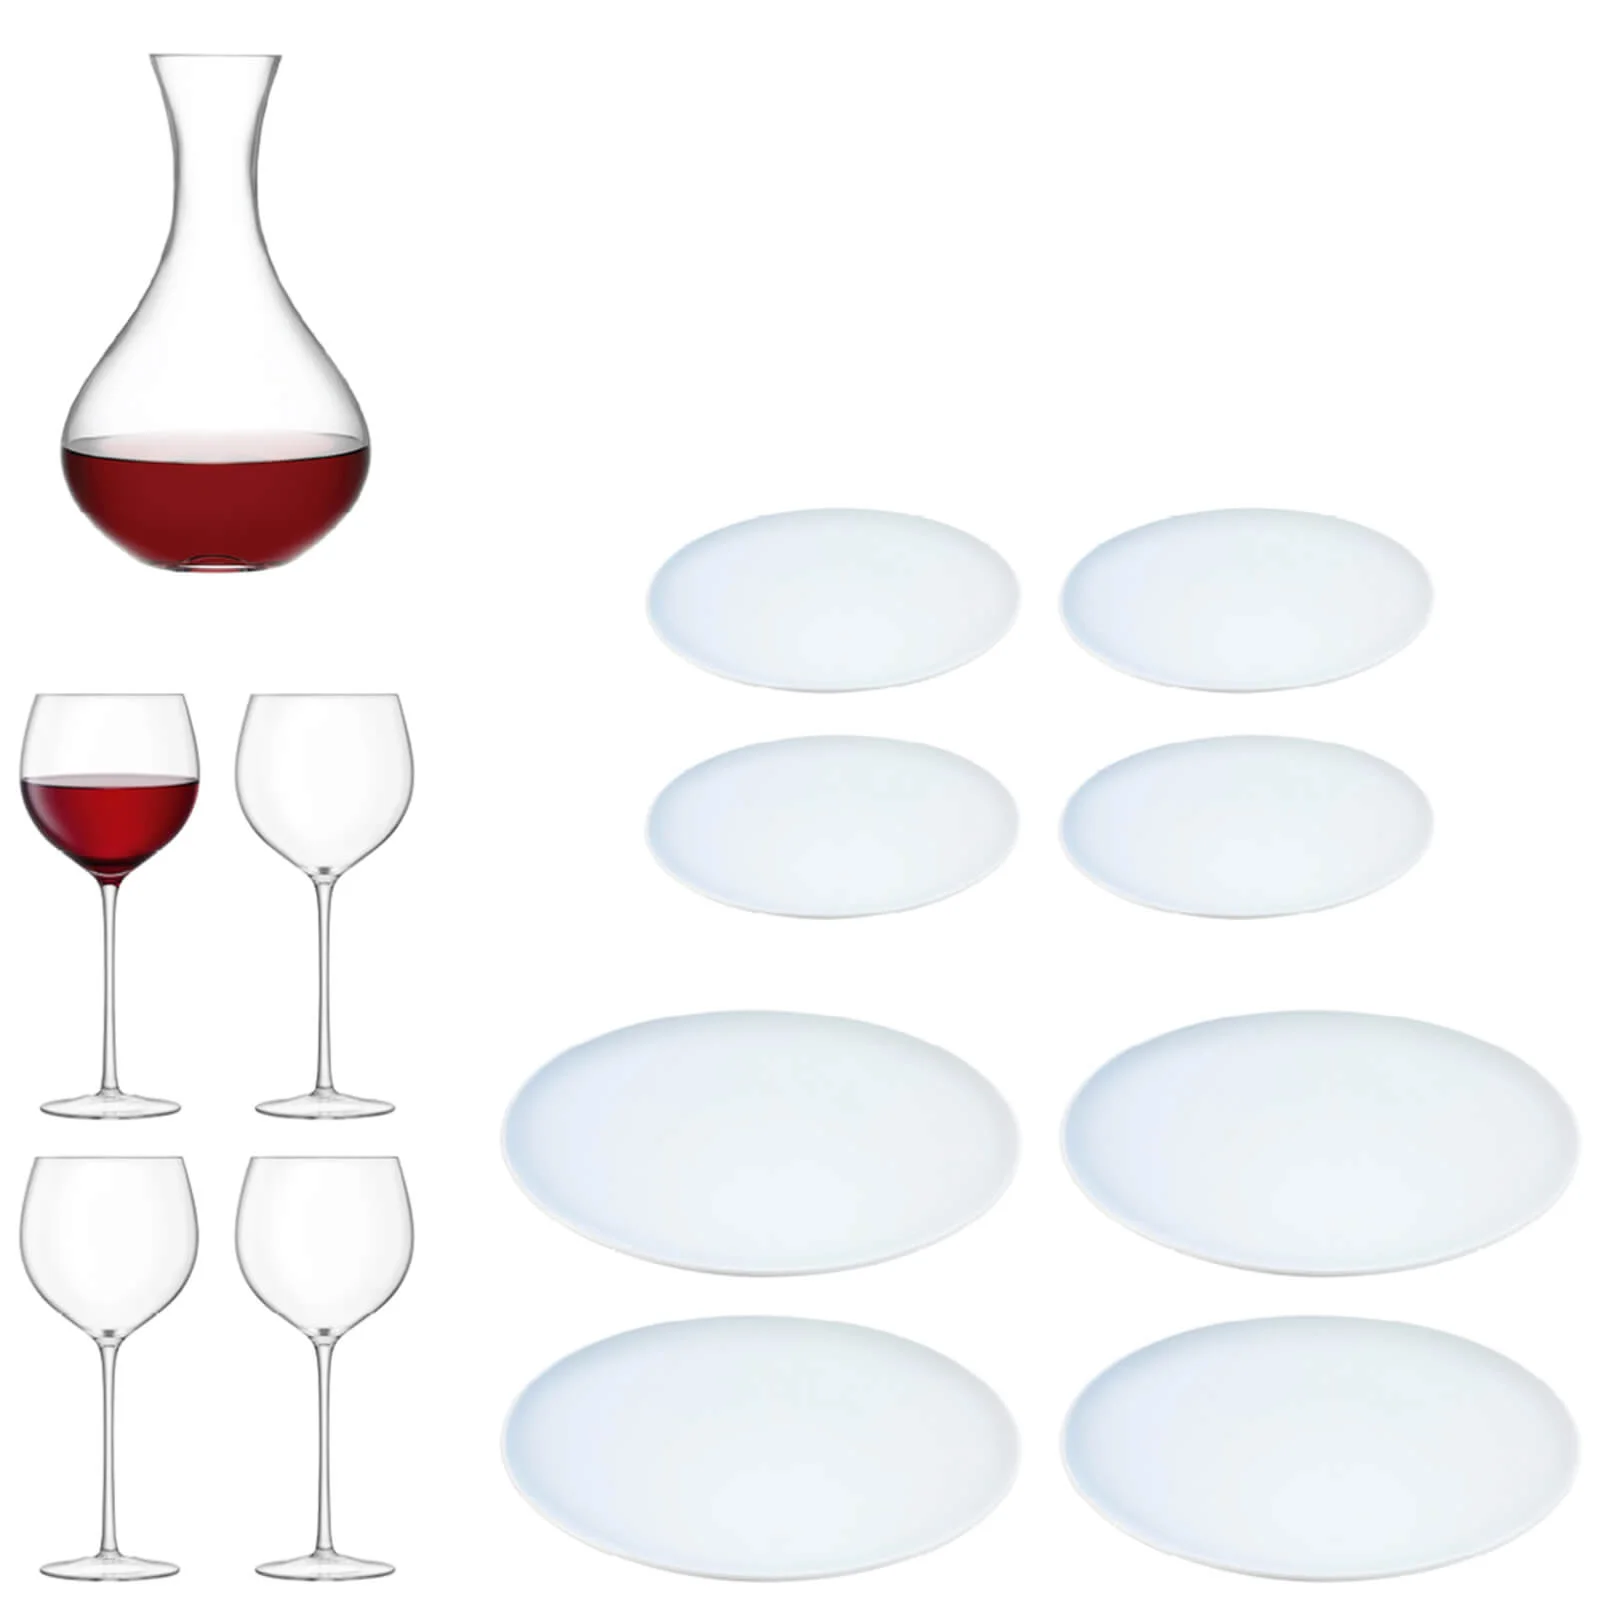 LSA Aura Handmade Wine Glass and Dine Starter Set Image 1